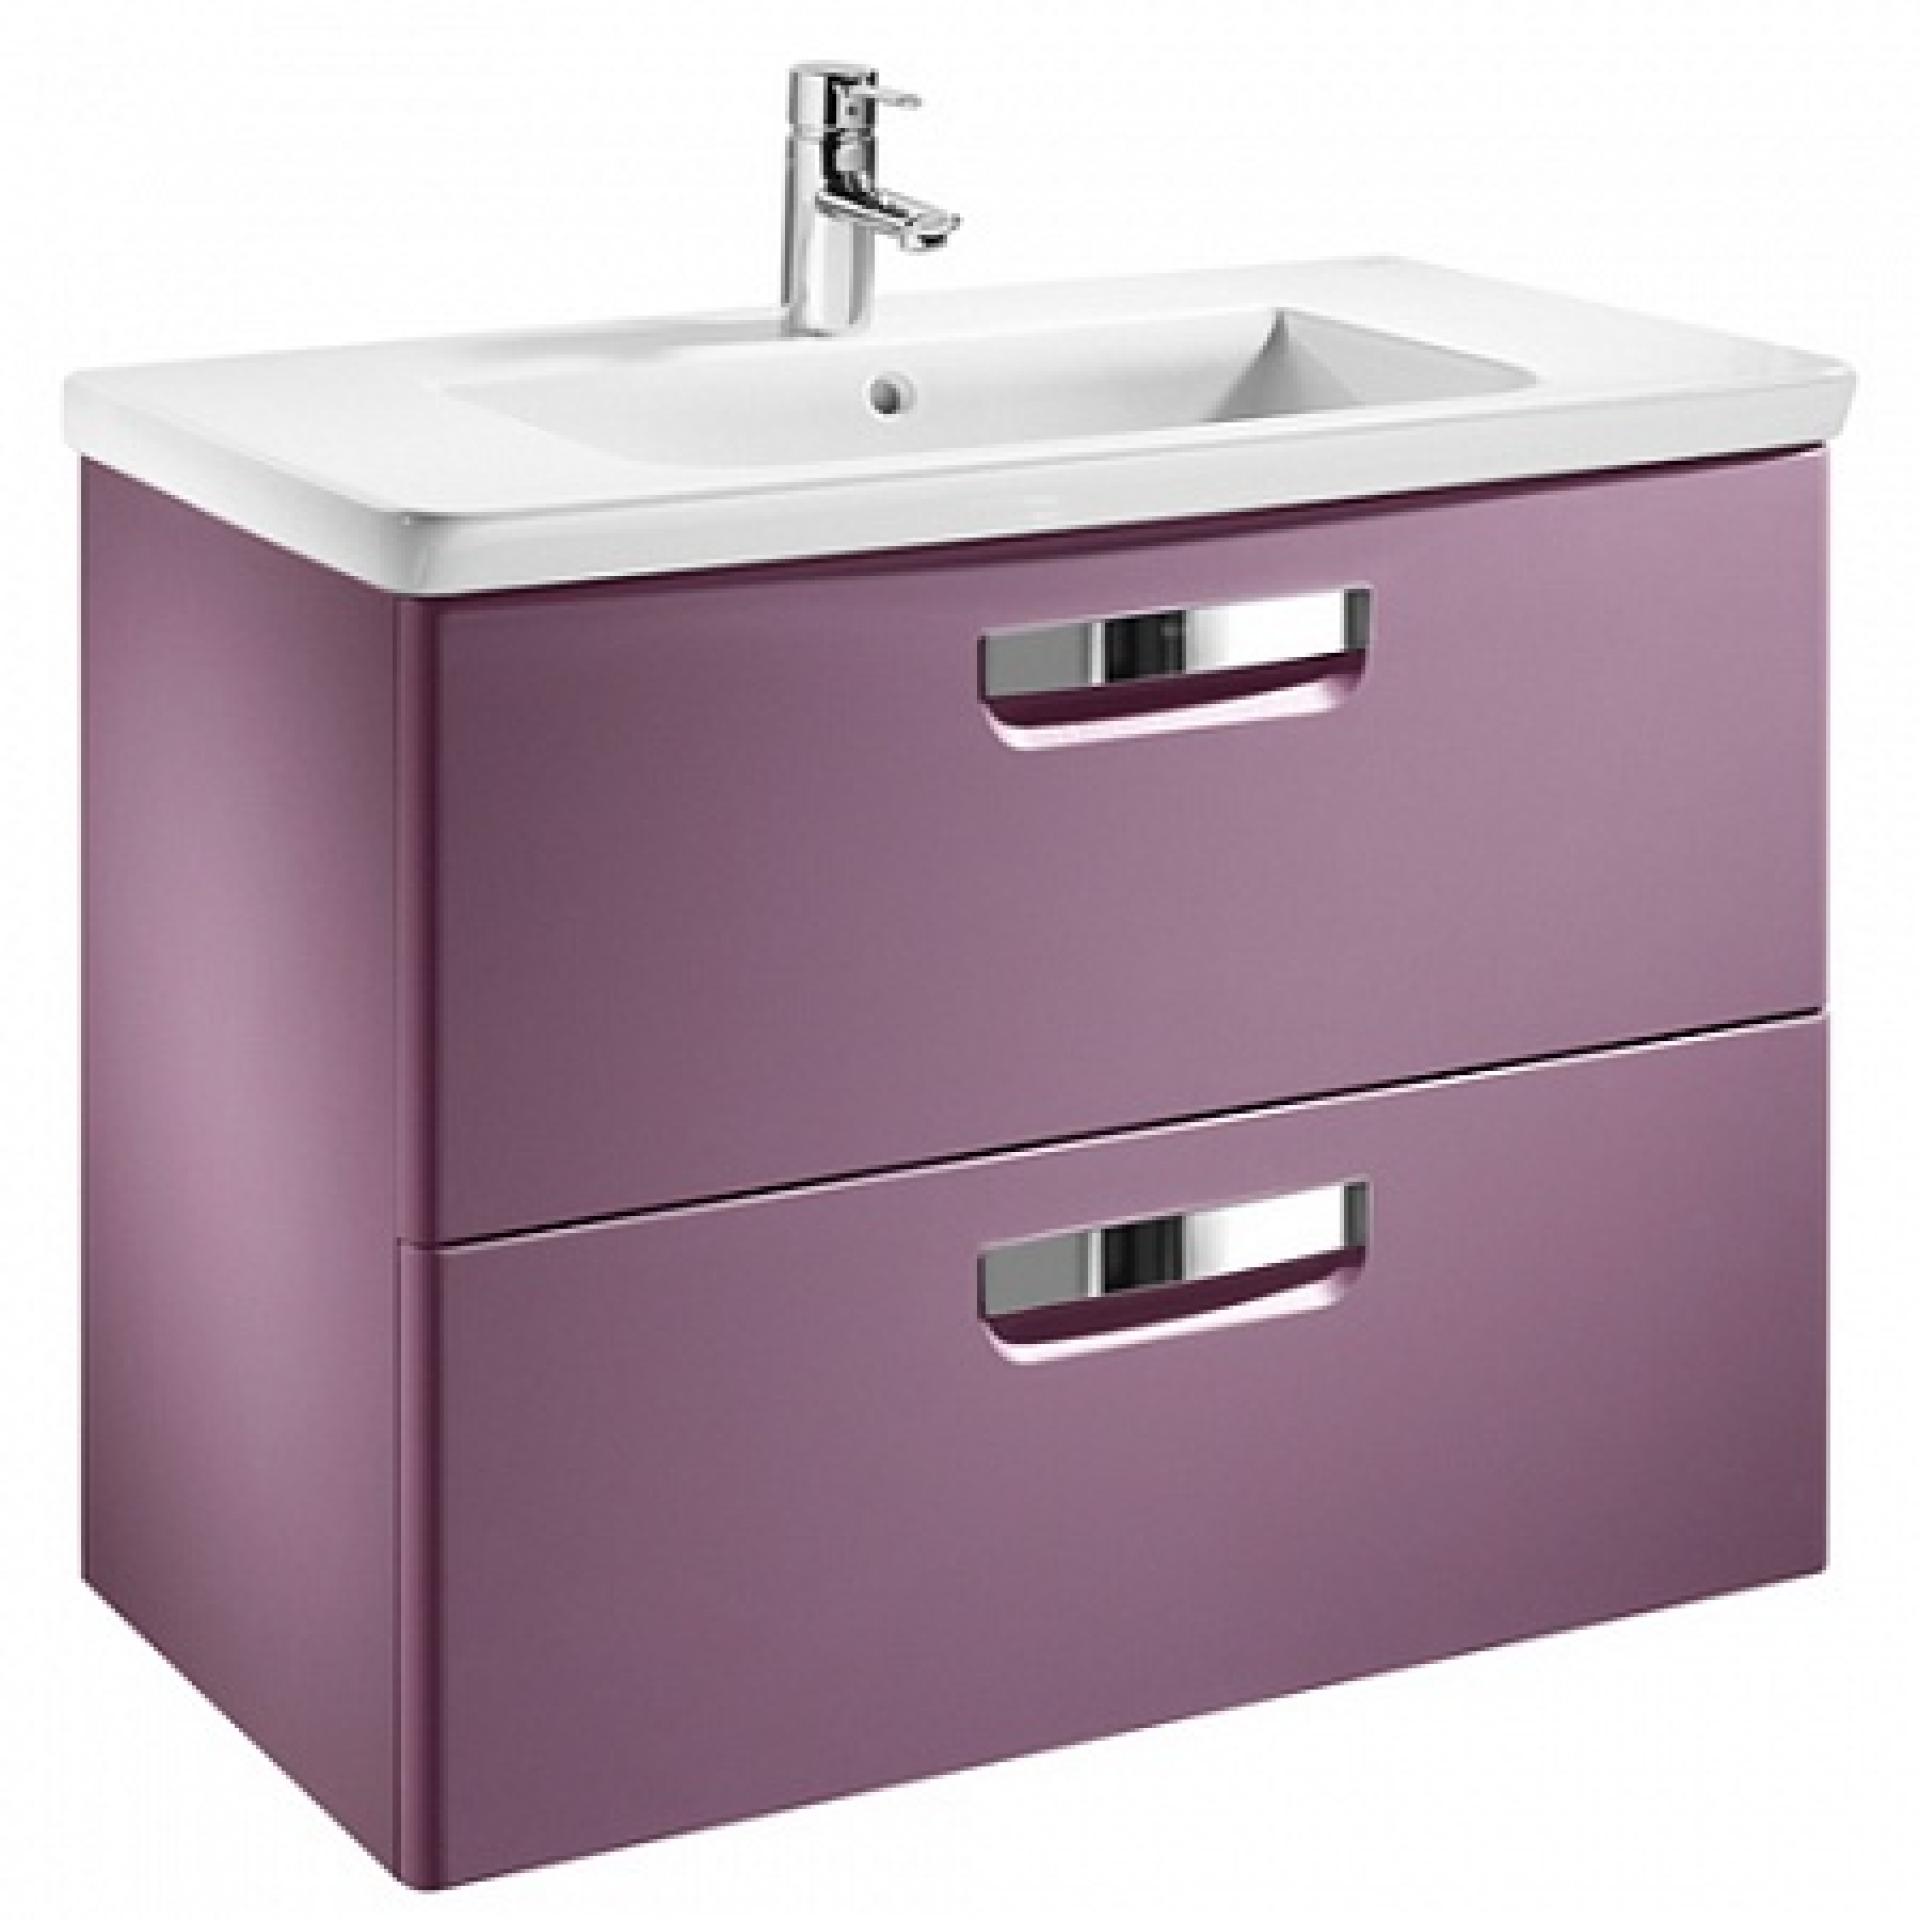 Фото: Комплект мебели 70 см Roca Gap фиолетовая, со светильником Roca в каталоге